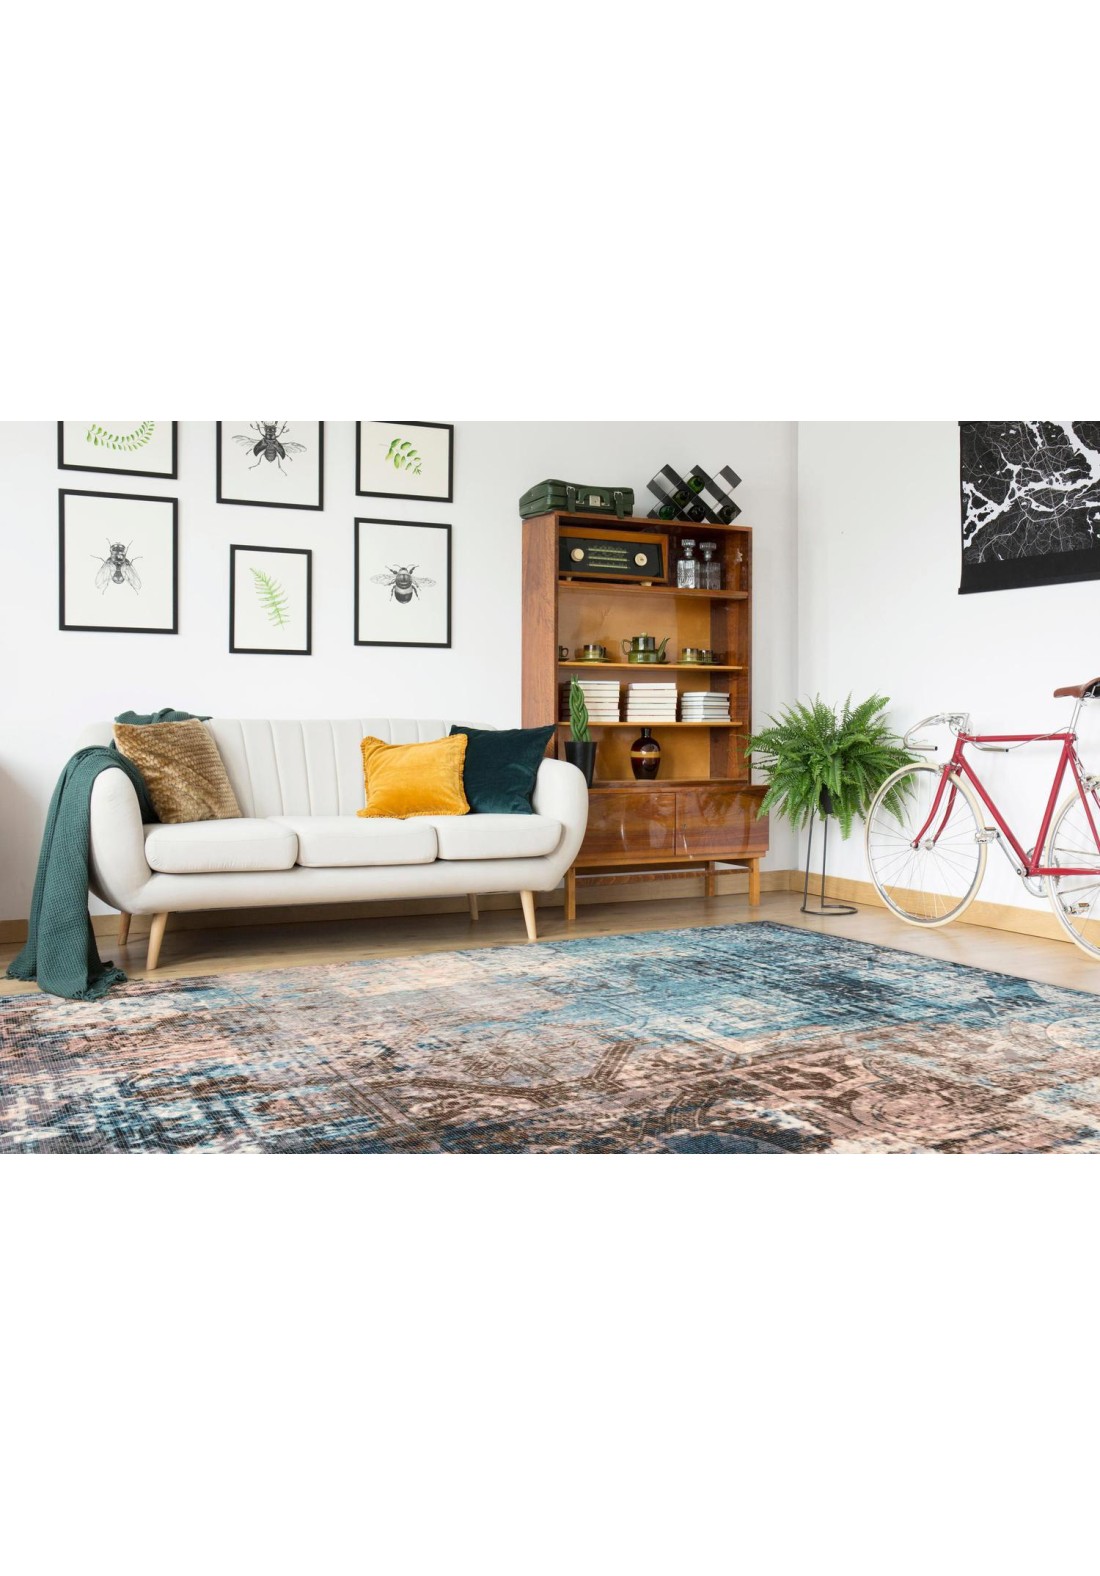 Tapis shaggy blanc : acheter un tapis de salon shaggy Arte Espina